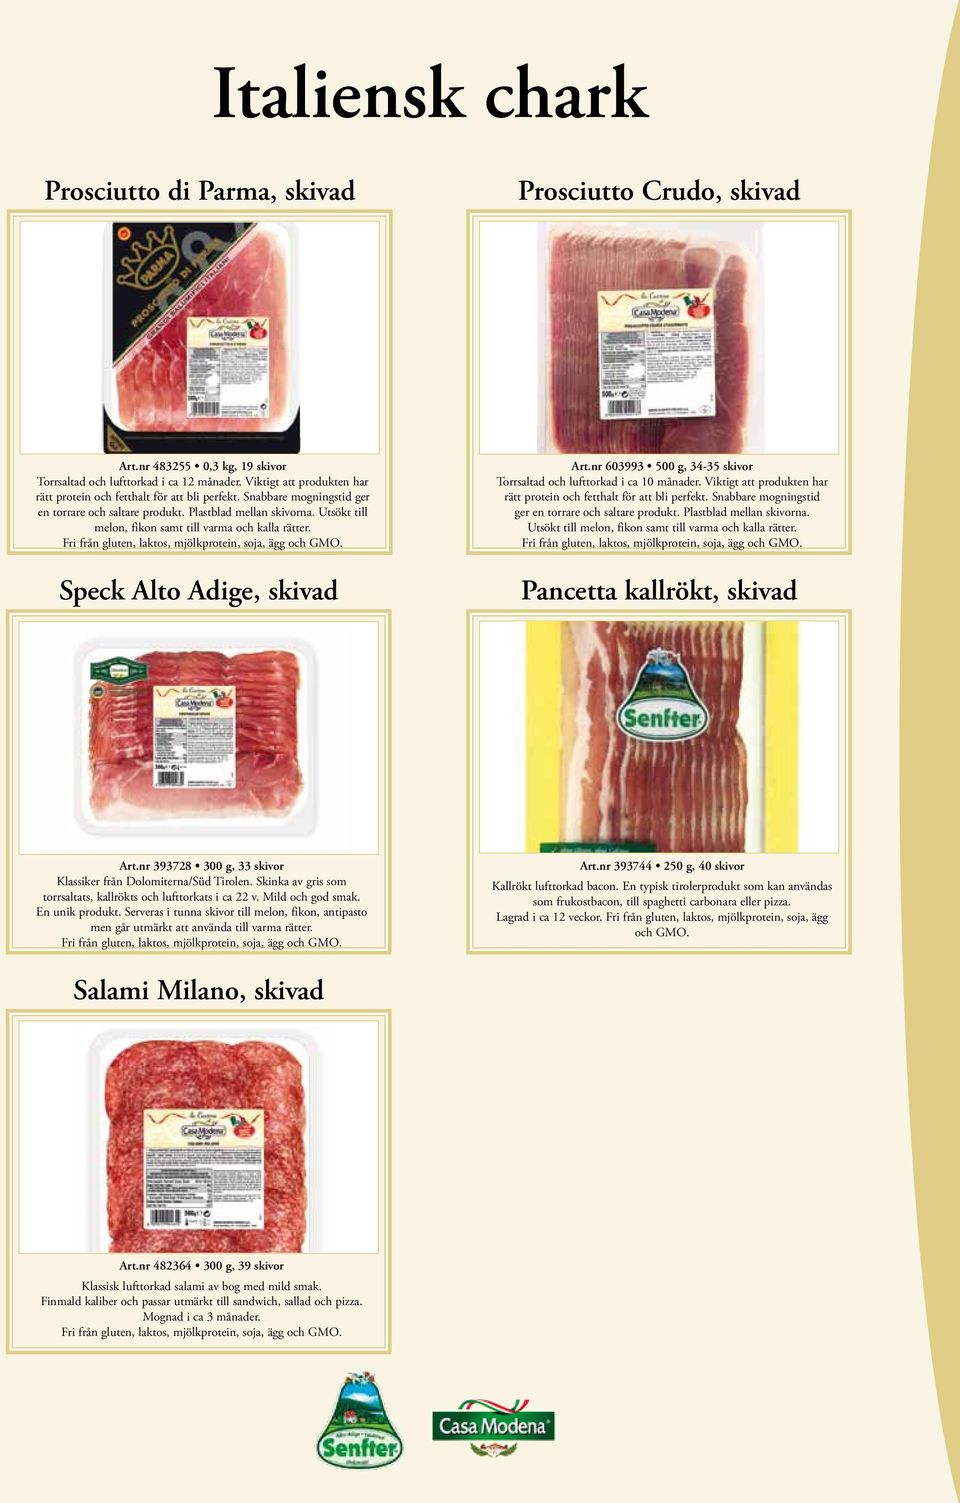 Utsökt till melon, fikon samt till varma och kalla rätter. Speck Alto Adige, skivad Art.nr 603993 500 g, 34-35 skivor Torrsaltad och lufttorkad i ca 10 månader.